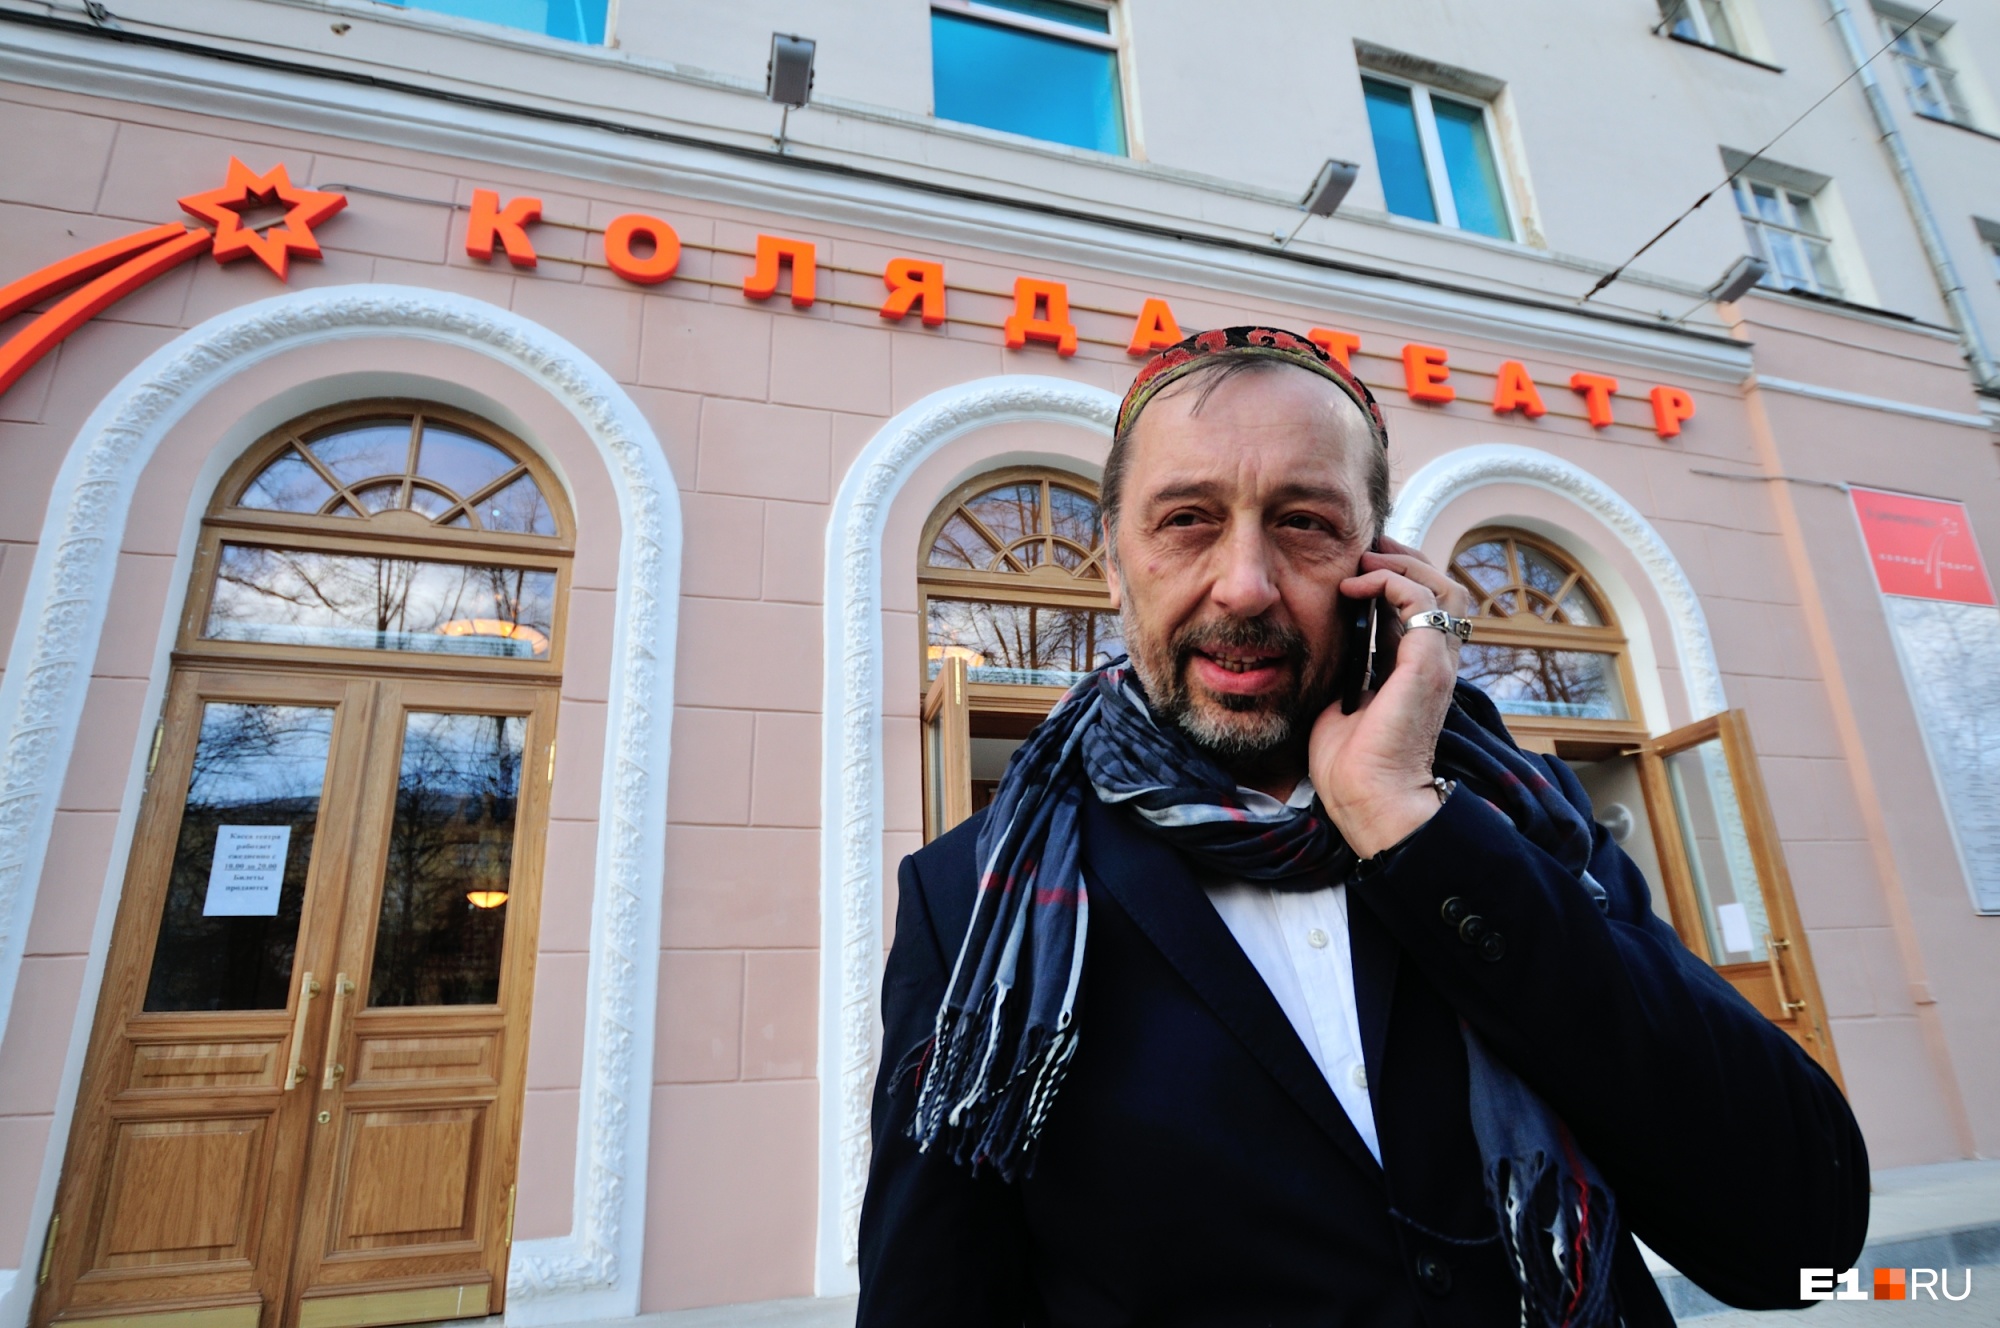 Президент выделил Николаю Коляде больше 3,5 миллиона рублей на фестиваль «Коляда Plays»